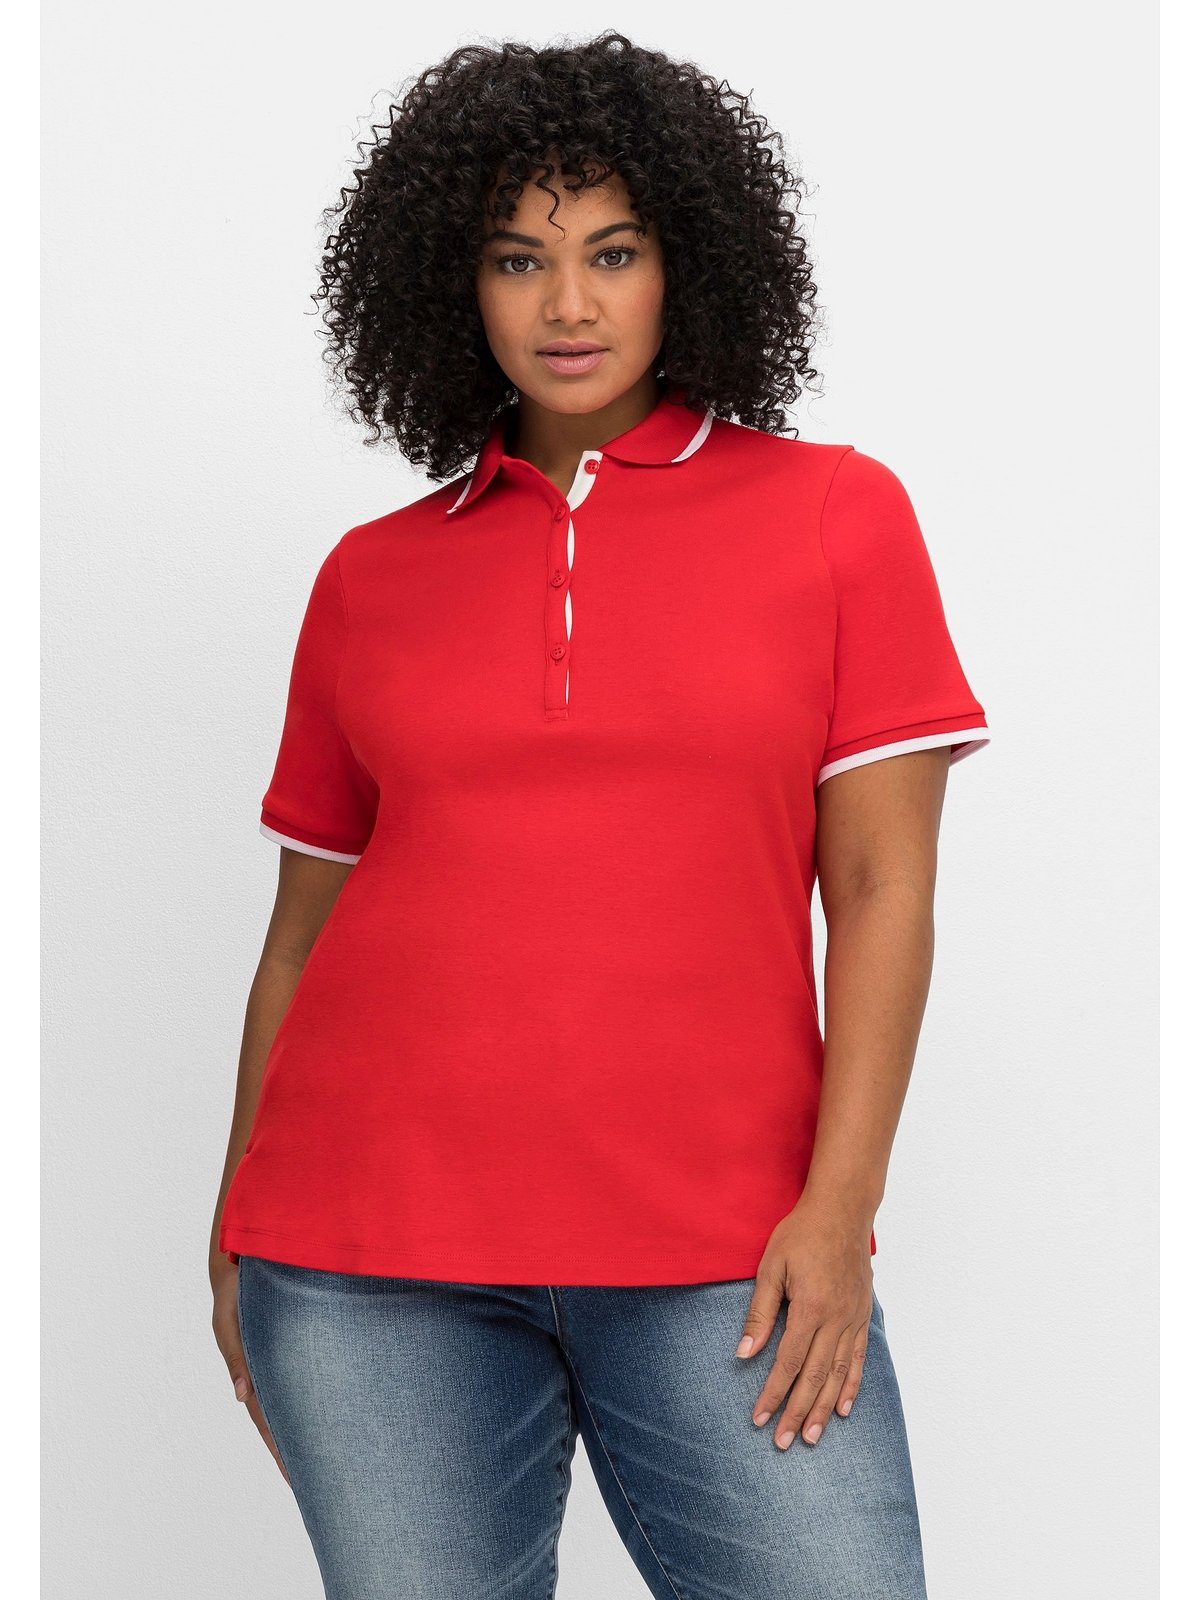 Sheego T-Shirt Große Größen mit Kontrastkanten, leicht tailliert | V-Shirts